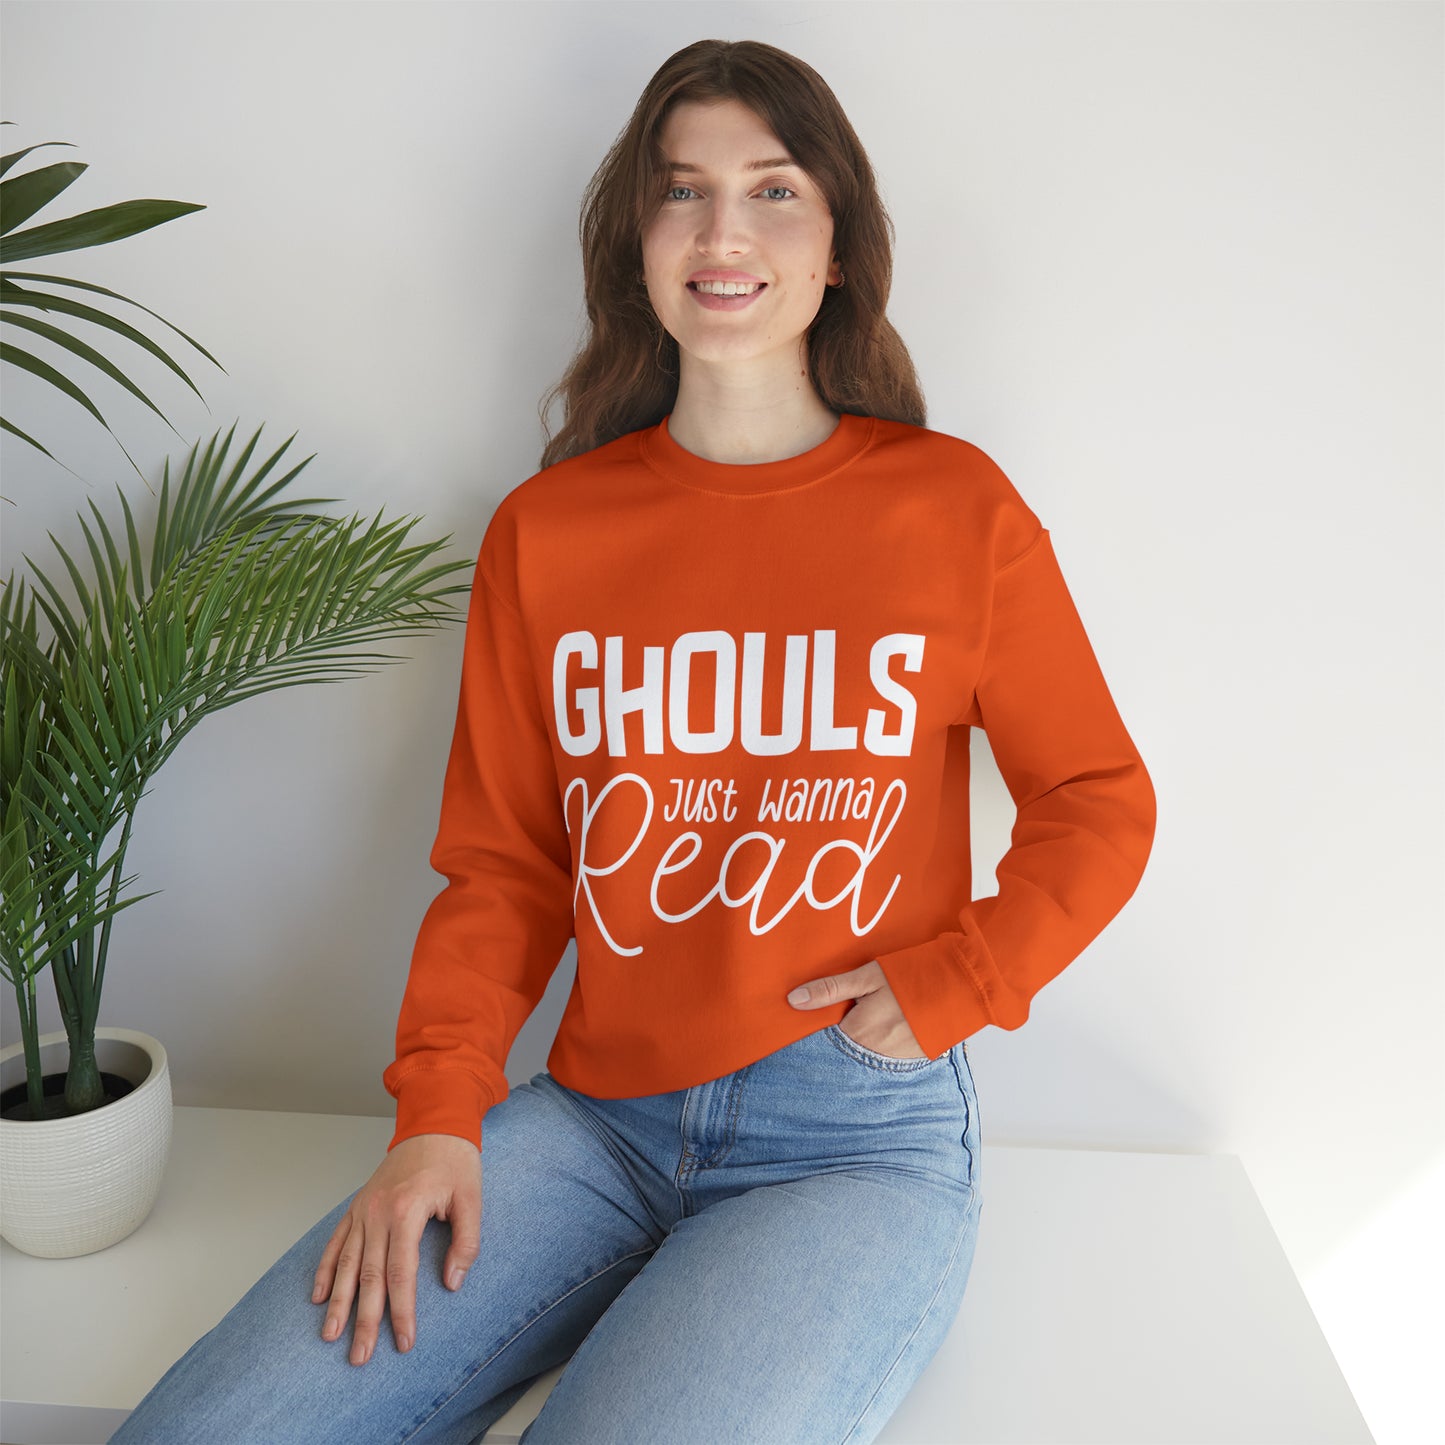 Ghouls Just Wanna Read Crewneck Sweatshirt